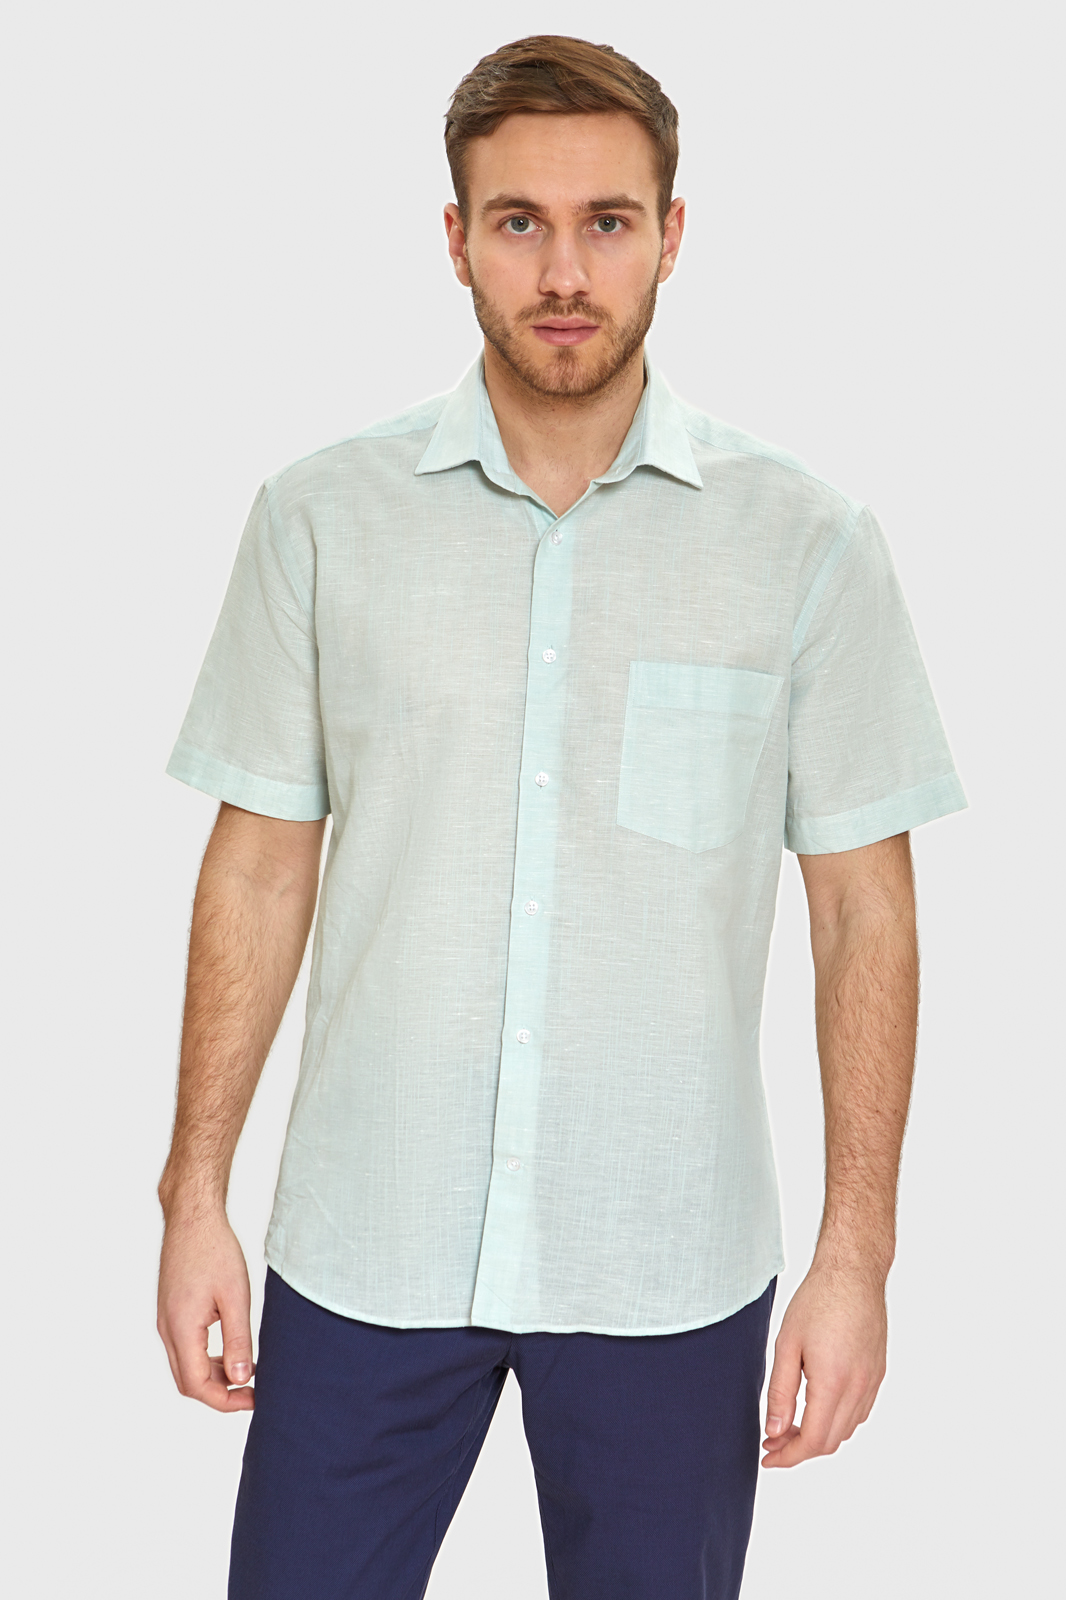 kanzler сорочка полуприталенная с коротким рукавом из хлопка и льна